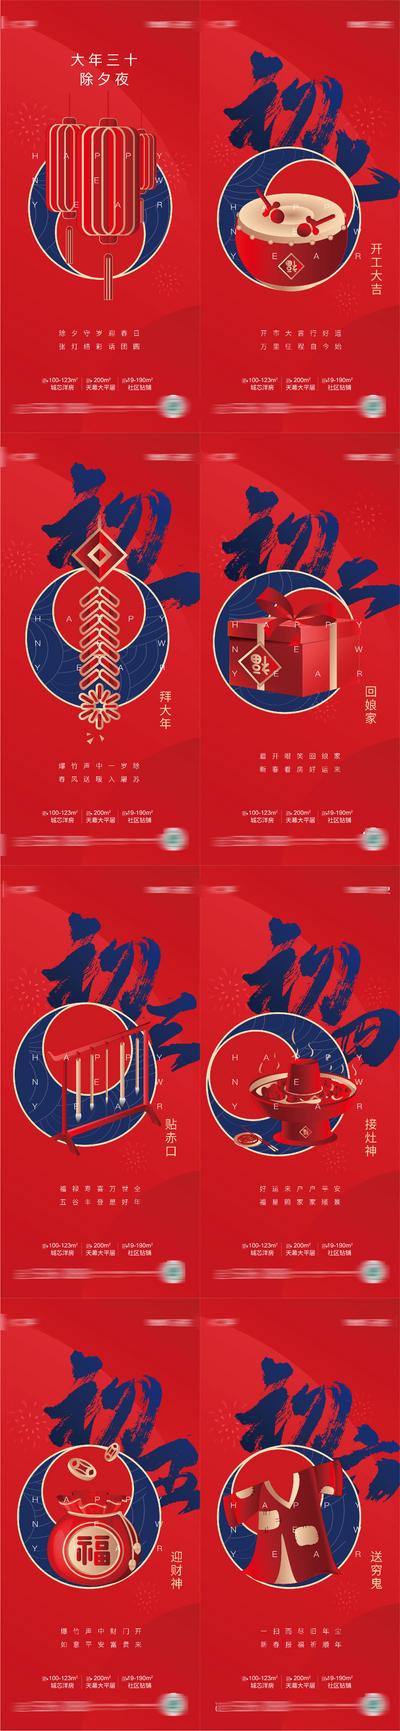 南门网 海报 中传统节日 房地产 除夕 毛笔 初一到初七 习俗 系列